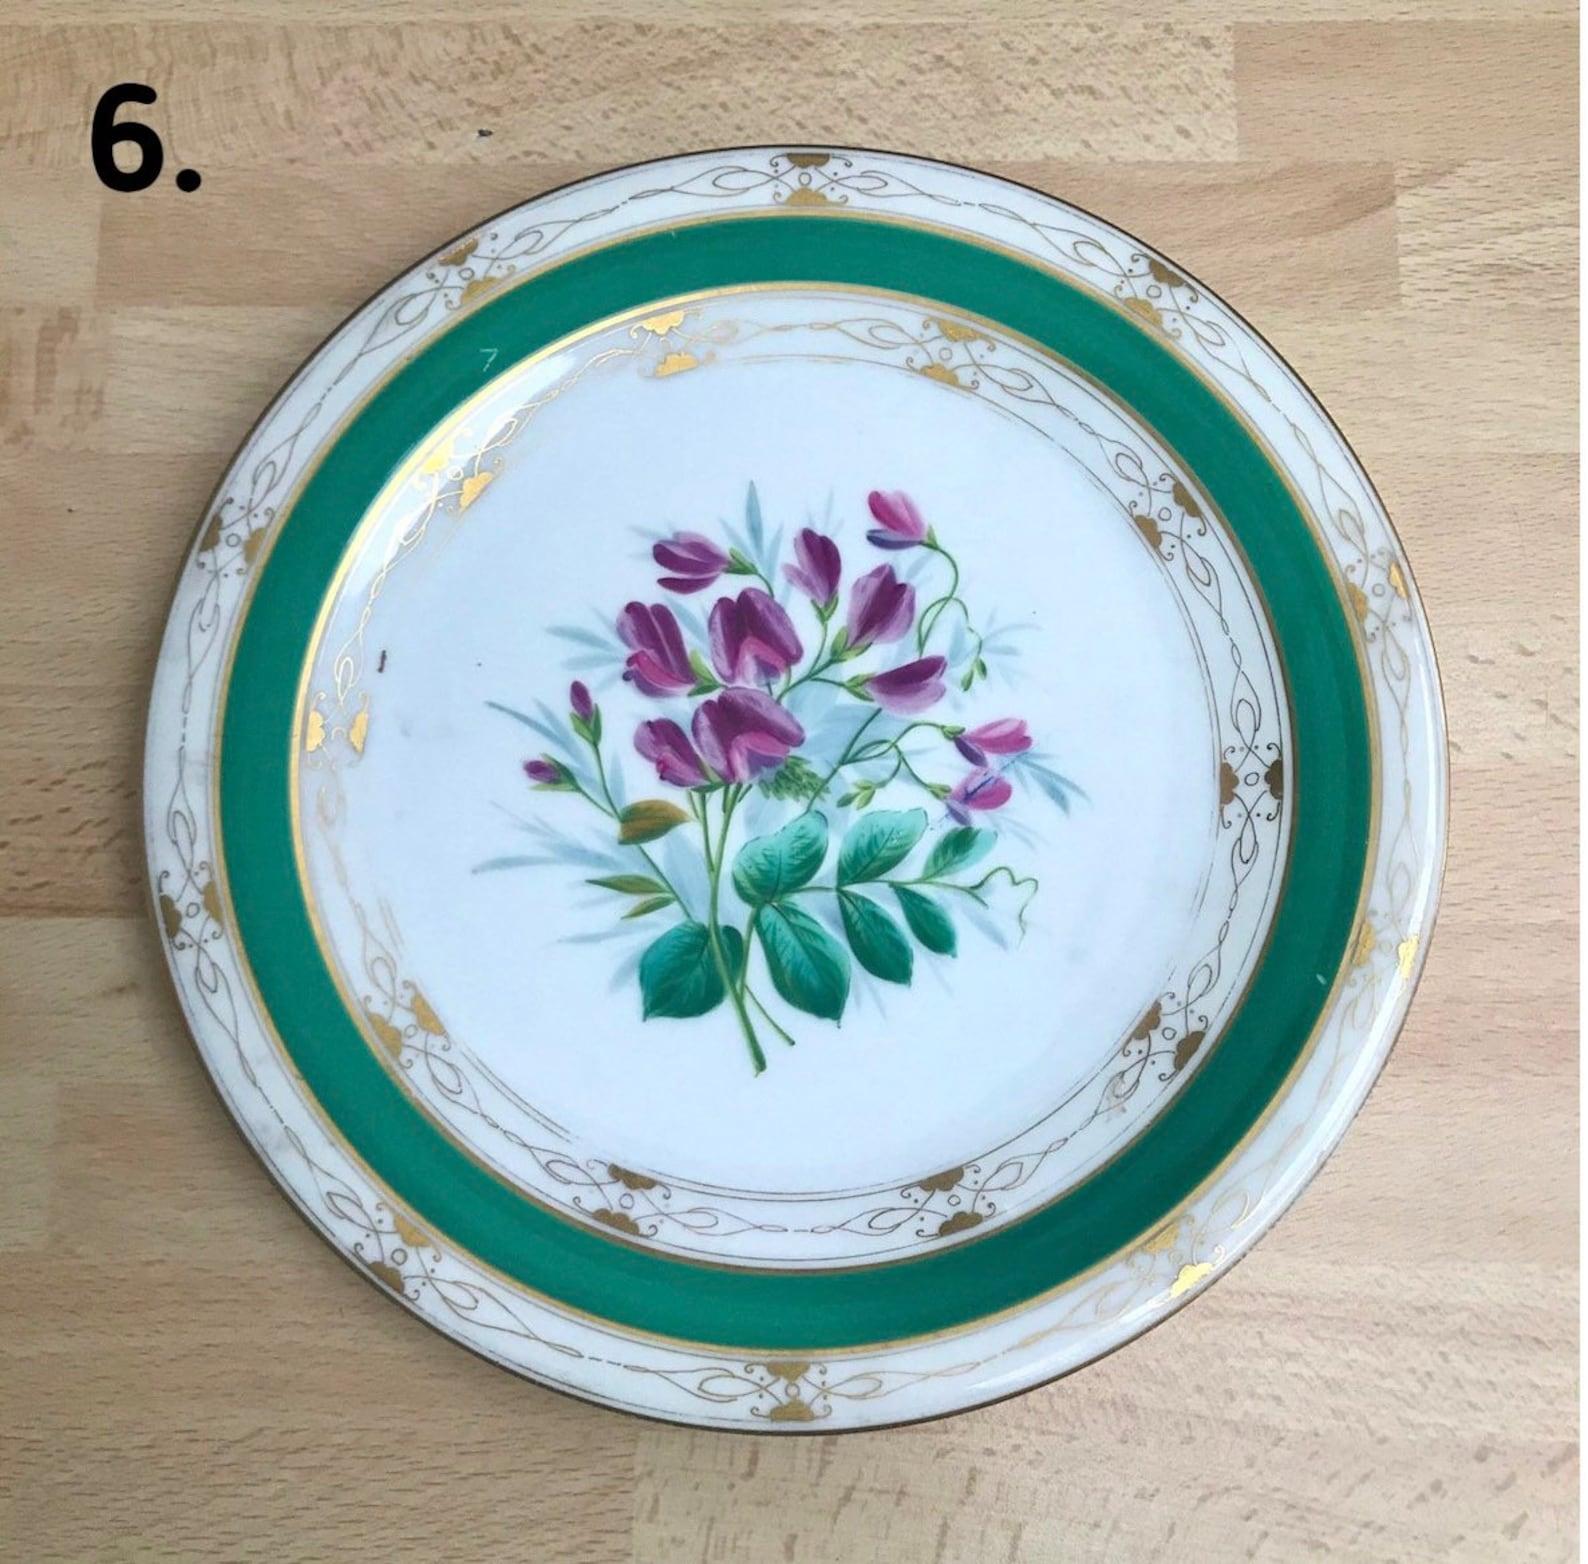 Antique Collectible Plates 19 Century Porcelain Plates For Sale 2